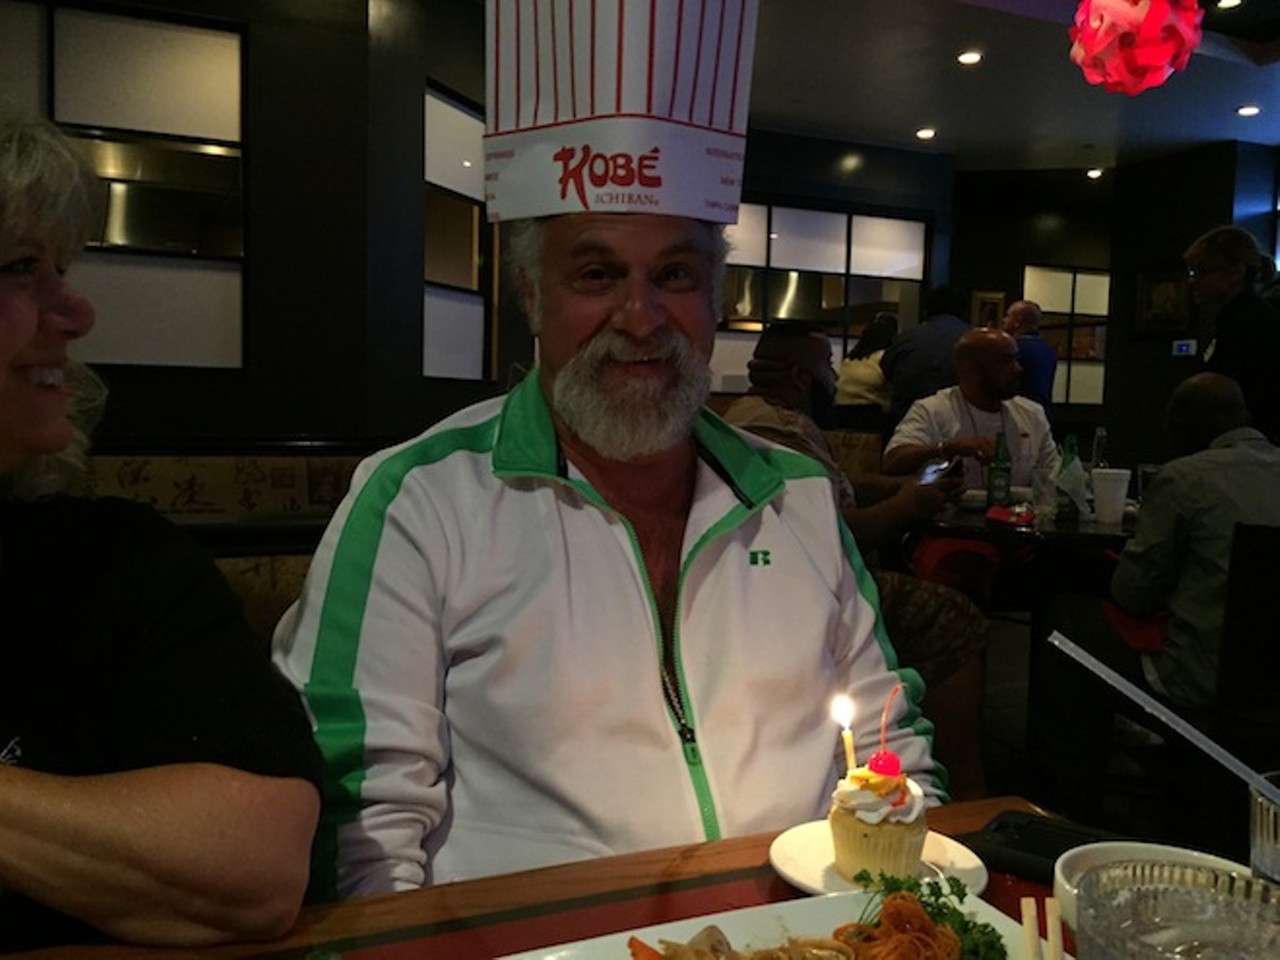 Celebrating dad's birthday at Kobe.